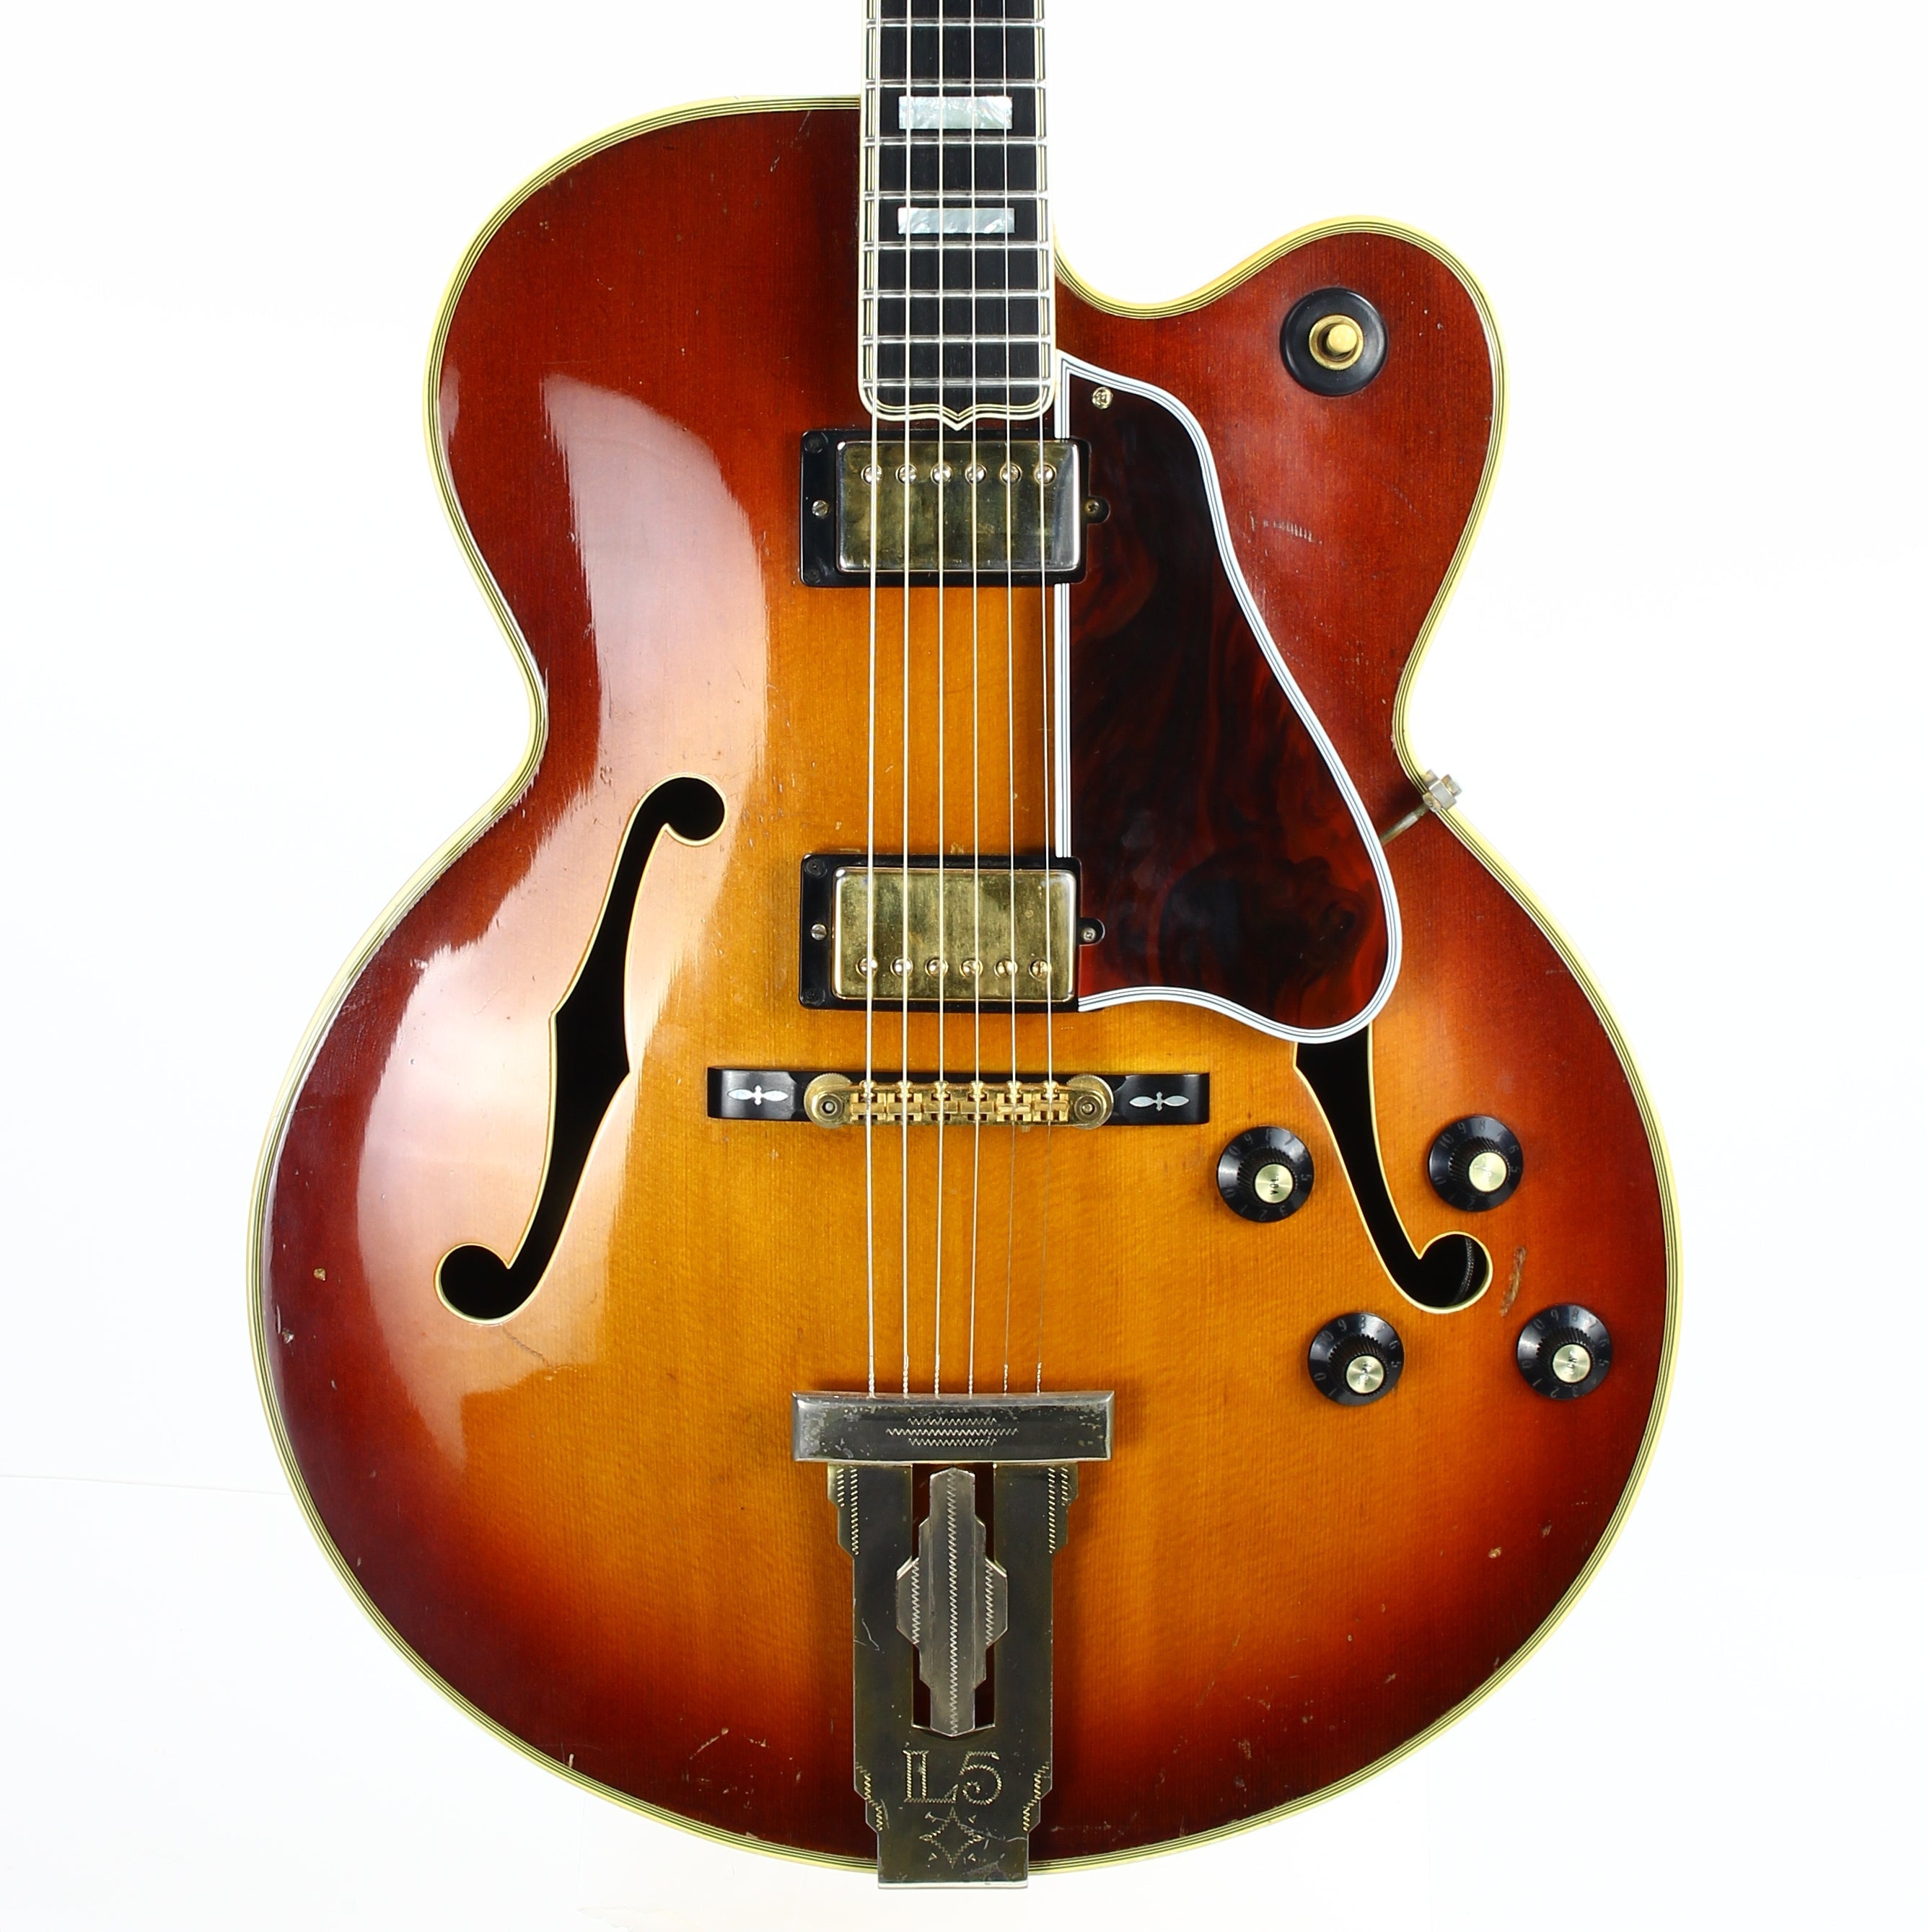 1973 Gibson L-5 CES Archtop Electric Jazz L5 Guitar - Vintage Sunburst, 1-11/16